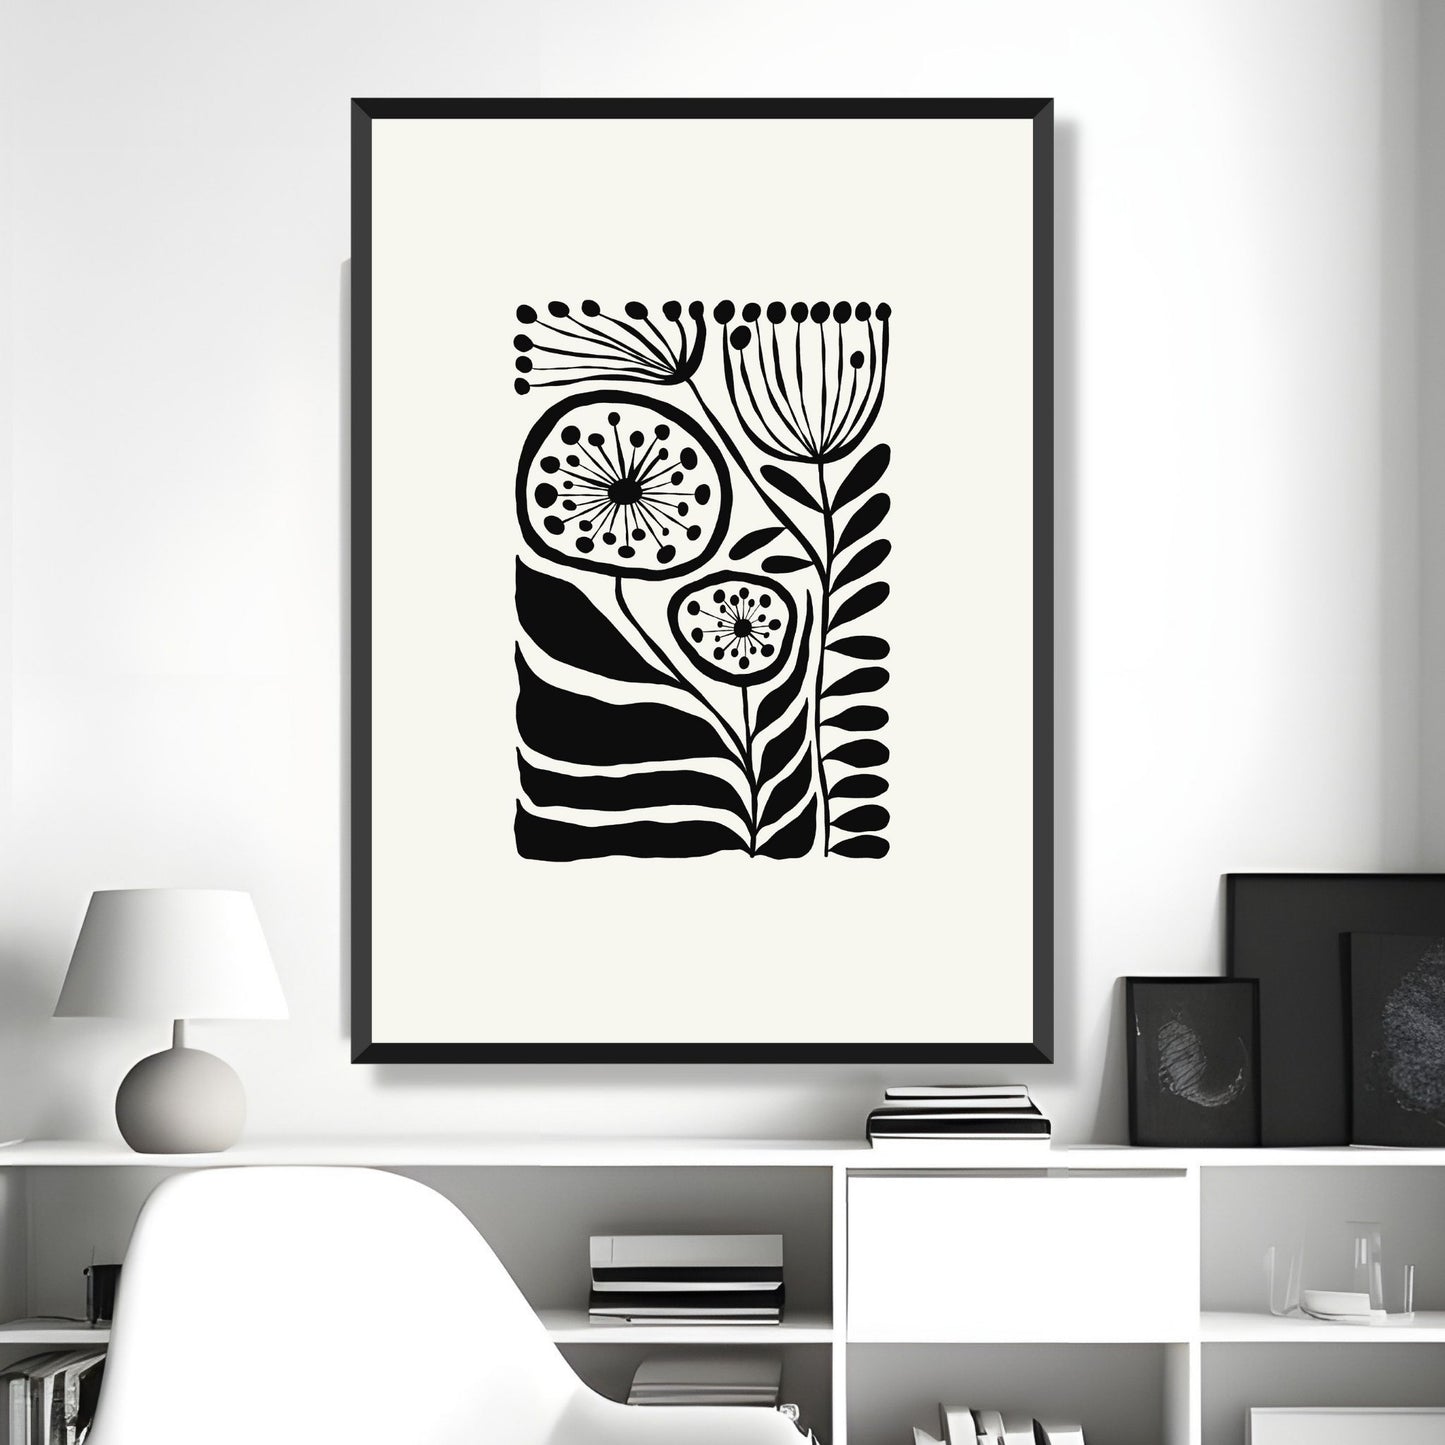 Bildet viser en grafisk plakat i abstrakt, floralt mønster i sort og dempet hvit bakgrunn. Plakaten har en bredt kant i dempet hvit farge rundt og henger i sort ramme på en lys vegg.